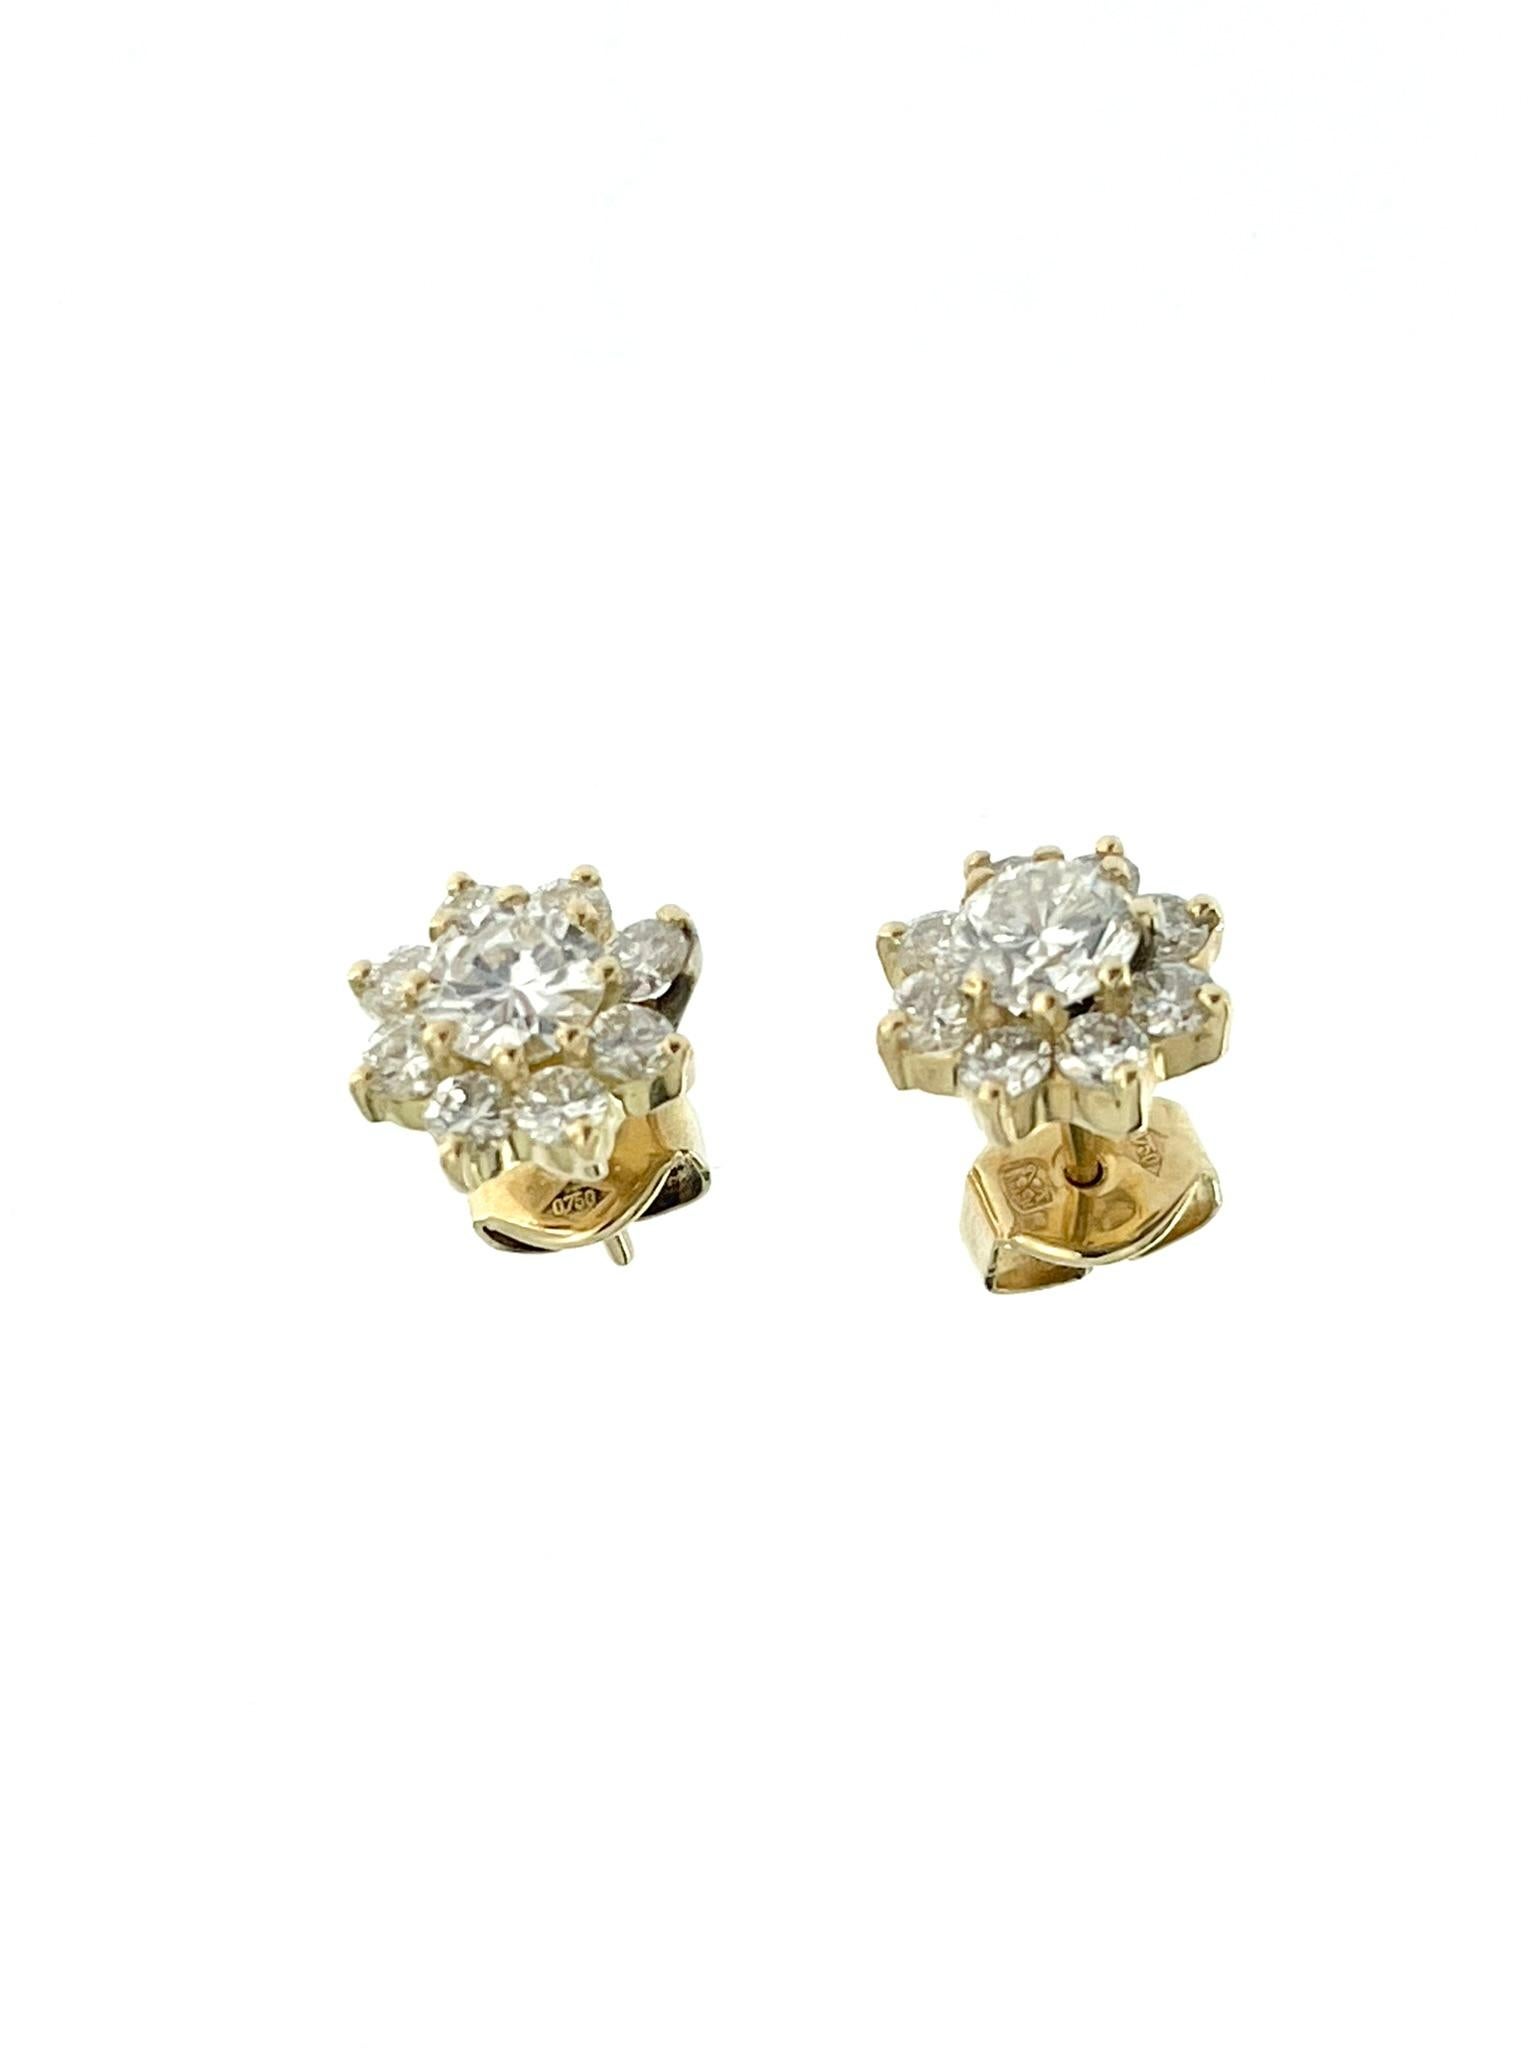 HRD Certified Yellow Gold Diamond Flower Earrings For Sale 3